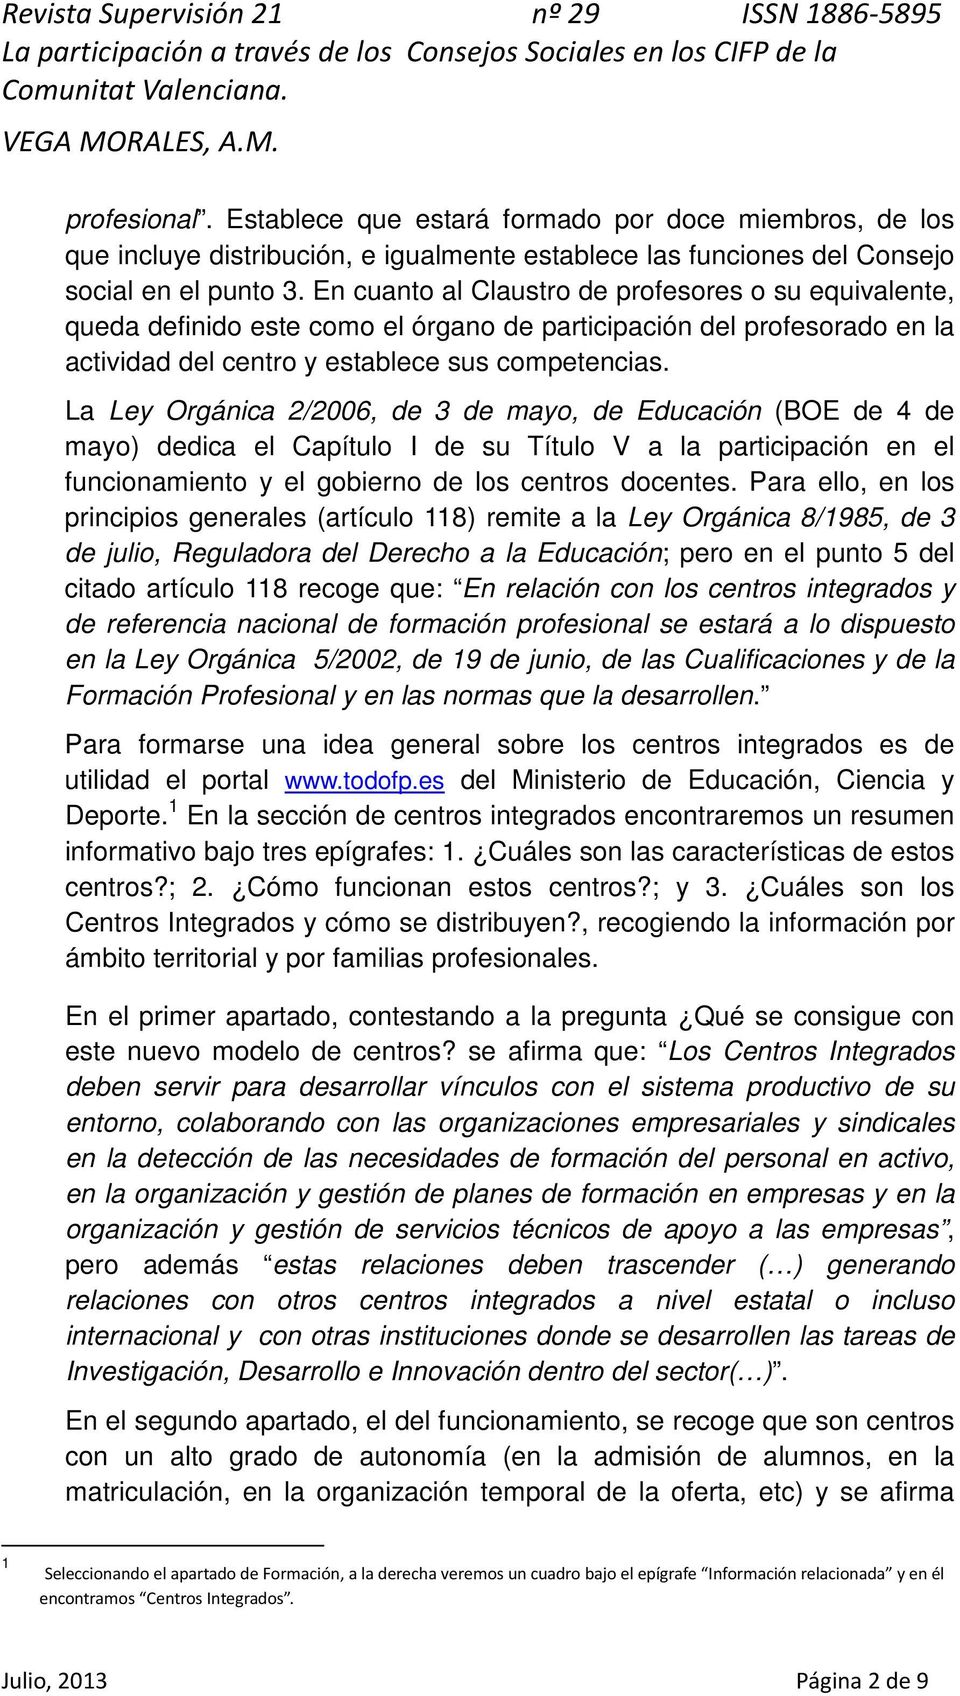 La Ley Orgánica 2/2006, de 3 de mayo, de Educación (BOE de 4 de mayo) dedica el Capítulo I de su Título V a la participación en el funcionamiento y el gobierno de los centros docentes.